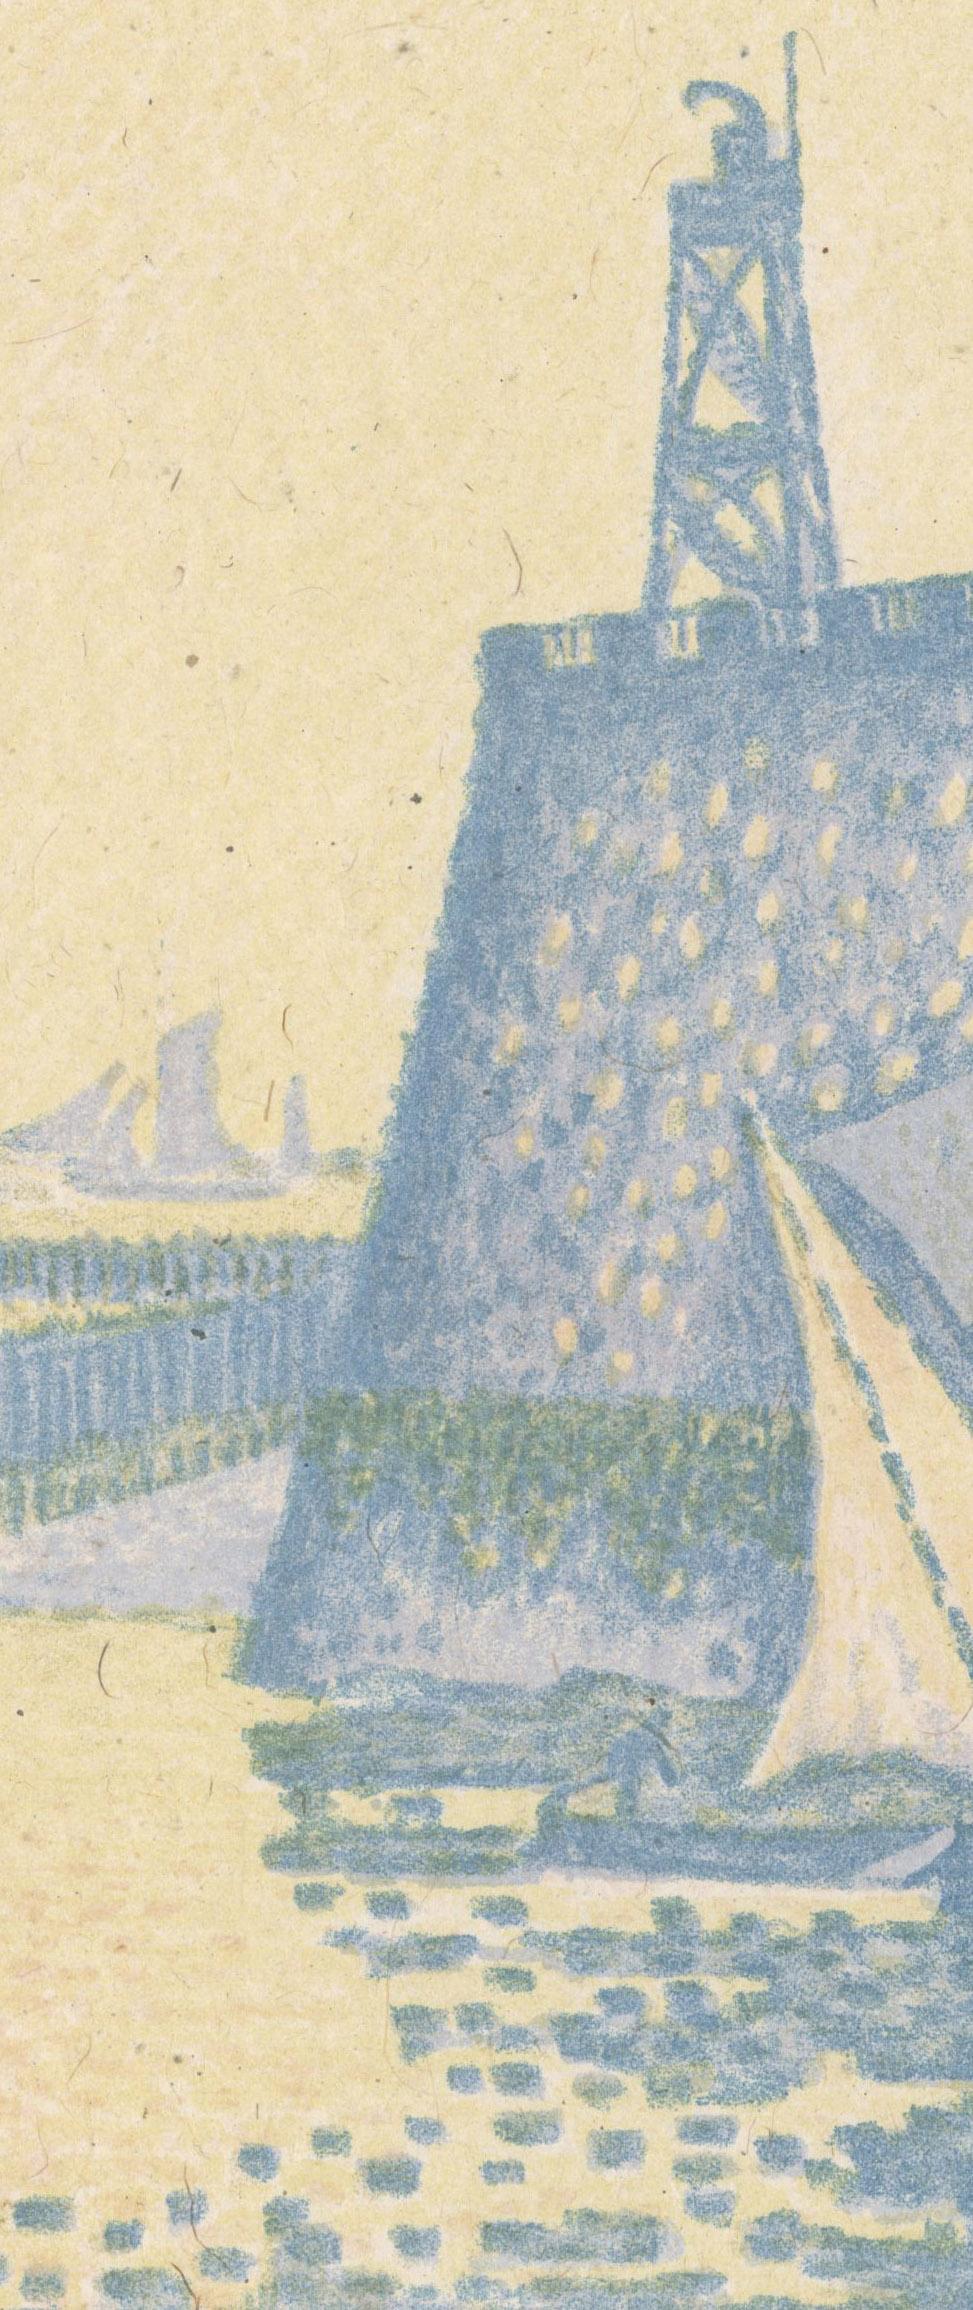 Abend or Le Soir La Jetée de Flassingue (Evening, The Pier at Vlissingen)
Color lithograph, 1898
Unsigned (as issued)
As published in 